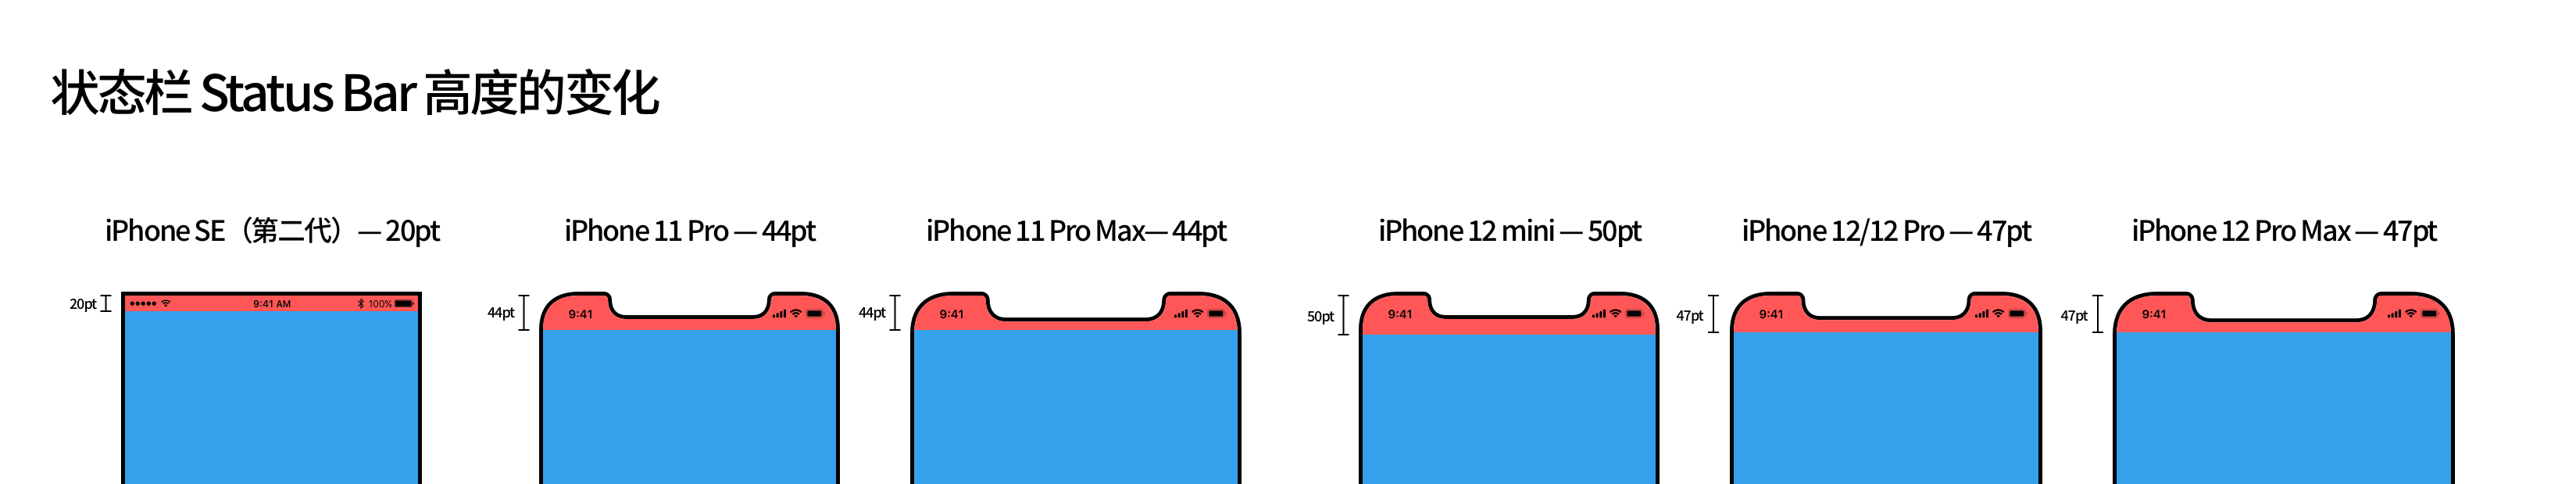 全新 iPhone 12 发布，再谈 iPhone 屏幕尺寸 - 少数派 - 图15